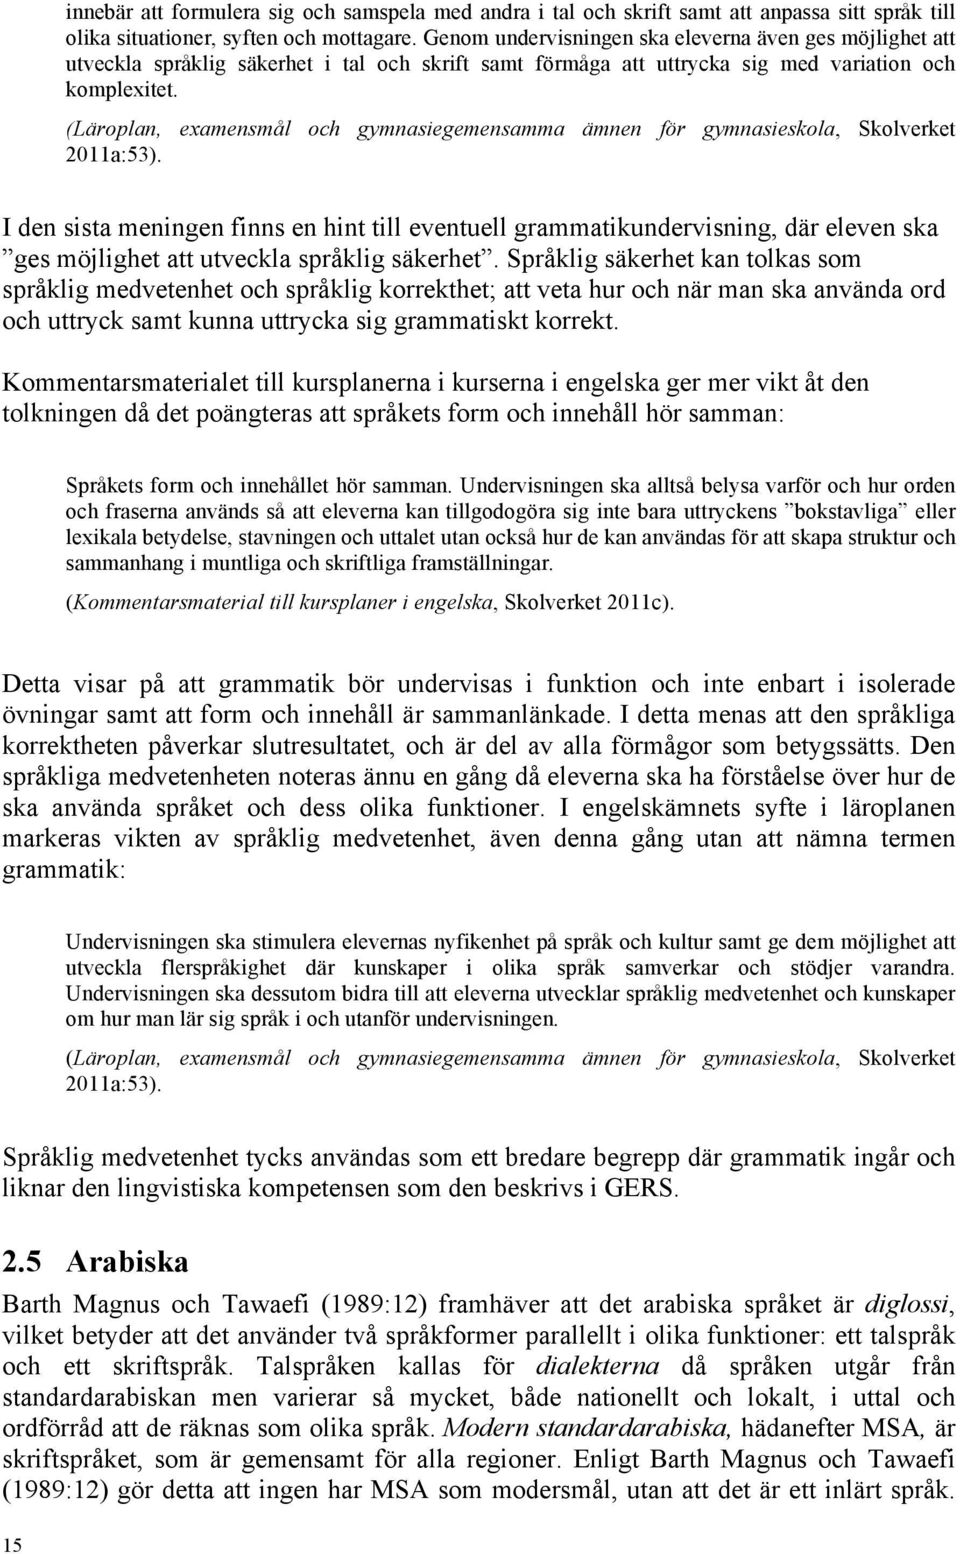 (Läroplan, examensmål och gymnasiegemensamma ämnen för gymnasieskola, Skolverket 2011a:53).